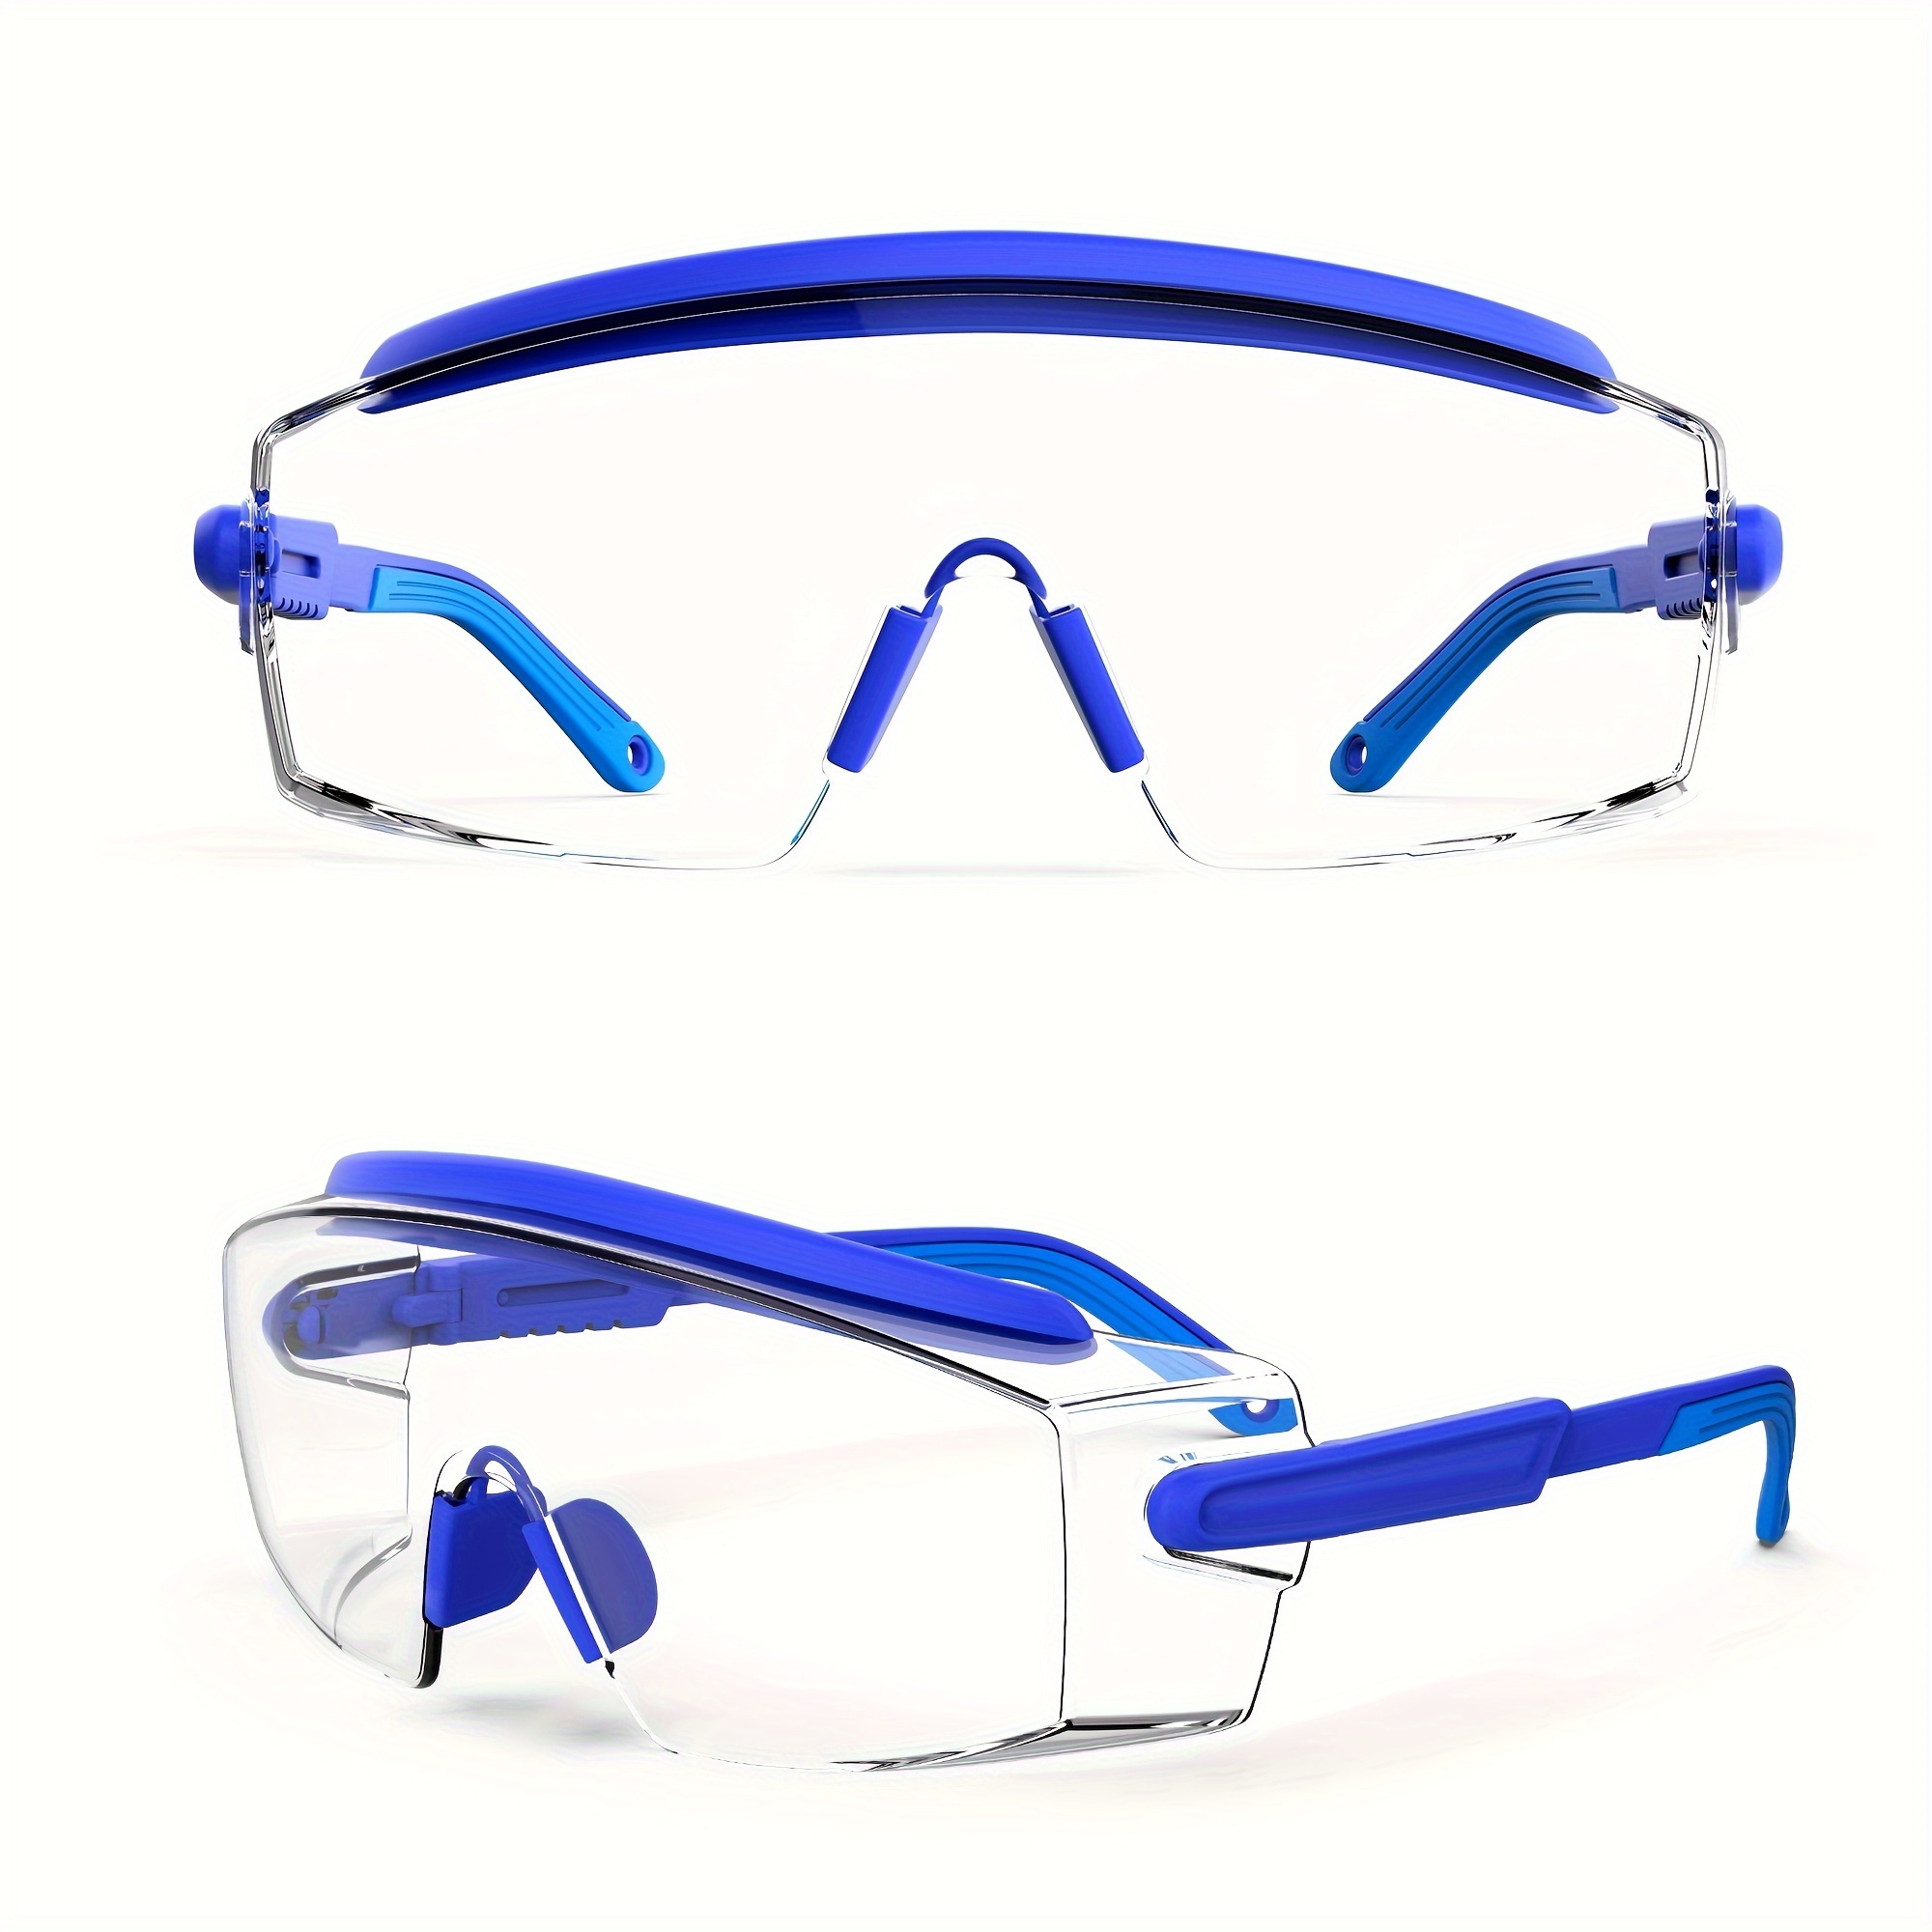 Anteojos de seguridad con antiempañante, Gafas de seguridad para anteojos,  Anteojos de protección con lentes antiarañazos, marco y patillas ajustables